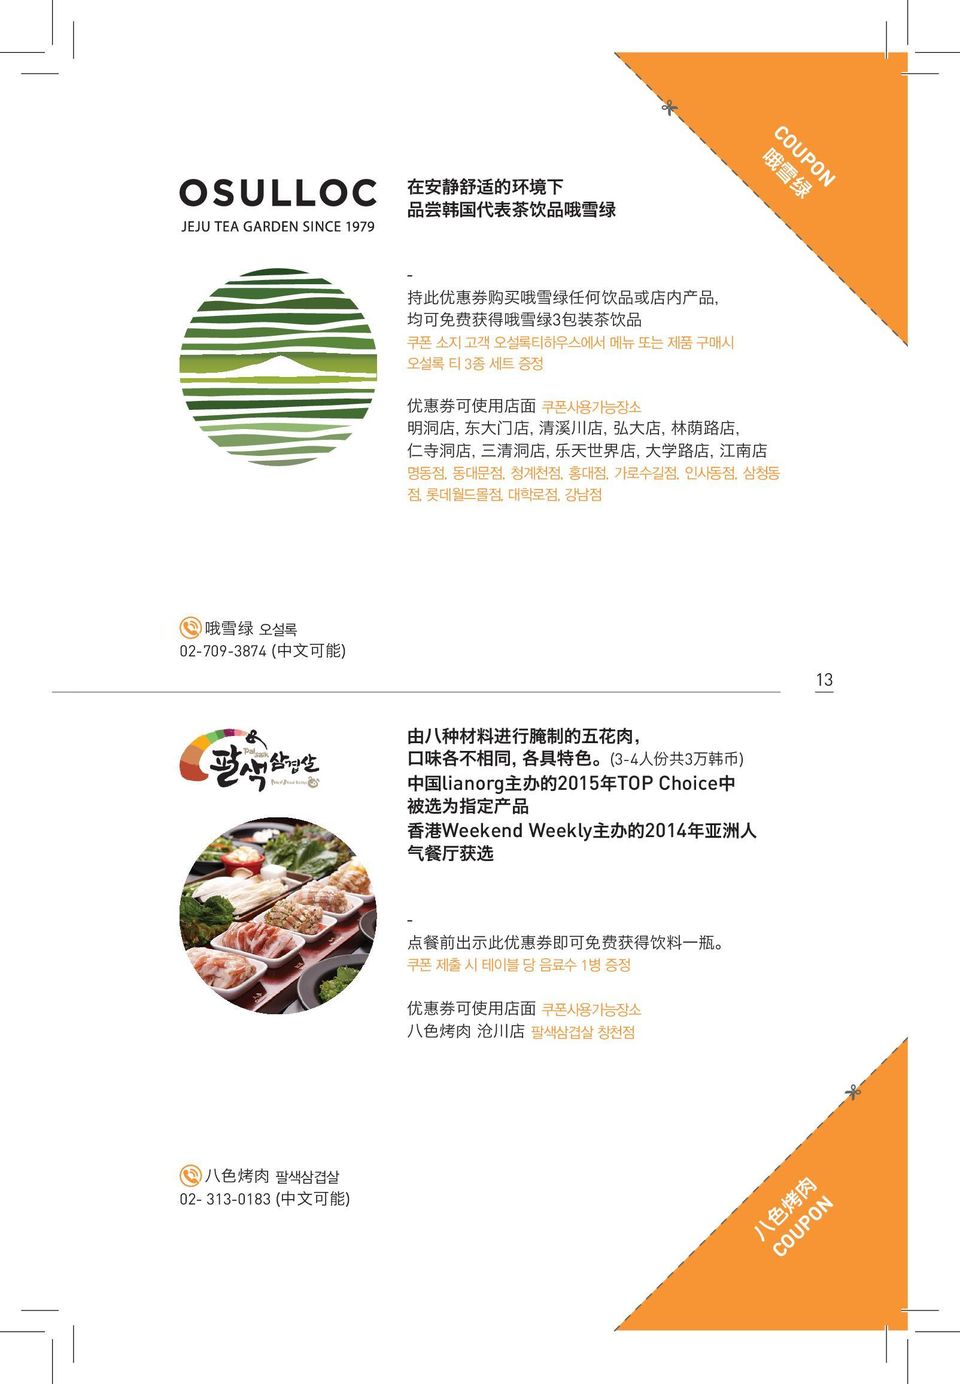 02-709-3874 ( 中 文 可 能 ) 13 由 八 种 材 料 进 行 腌 制 的 五 花 肉, 口 味 各 不 相 同, 各 具 特 色 (3-4 人 份 共 3 万 韩 币 ) 中 国 lianorg 主 办 的 2015 年 TOP Choice 中 被 选 为 指 定 产 品 香 港 Weekend Weekly 主 办 的 2014